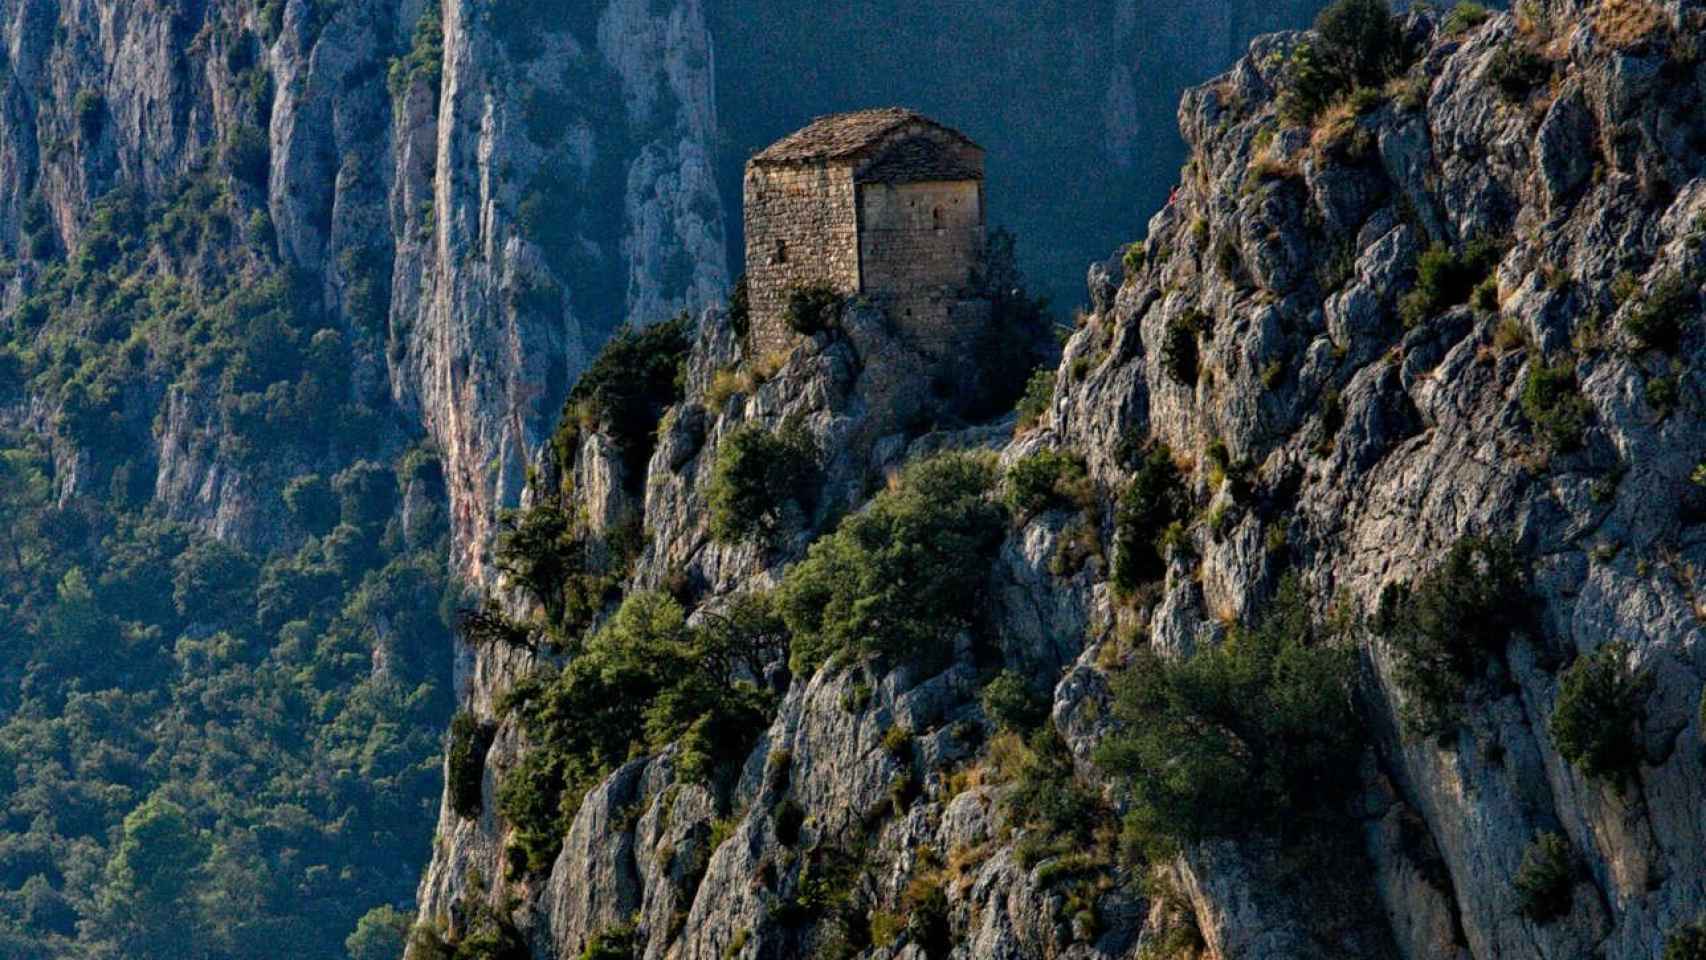 En Cataluña se pueden encontrar ermitas en zonas de exhuberante naturaleza / CREATIVE COMMONS - AMADALVAREZ